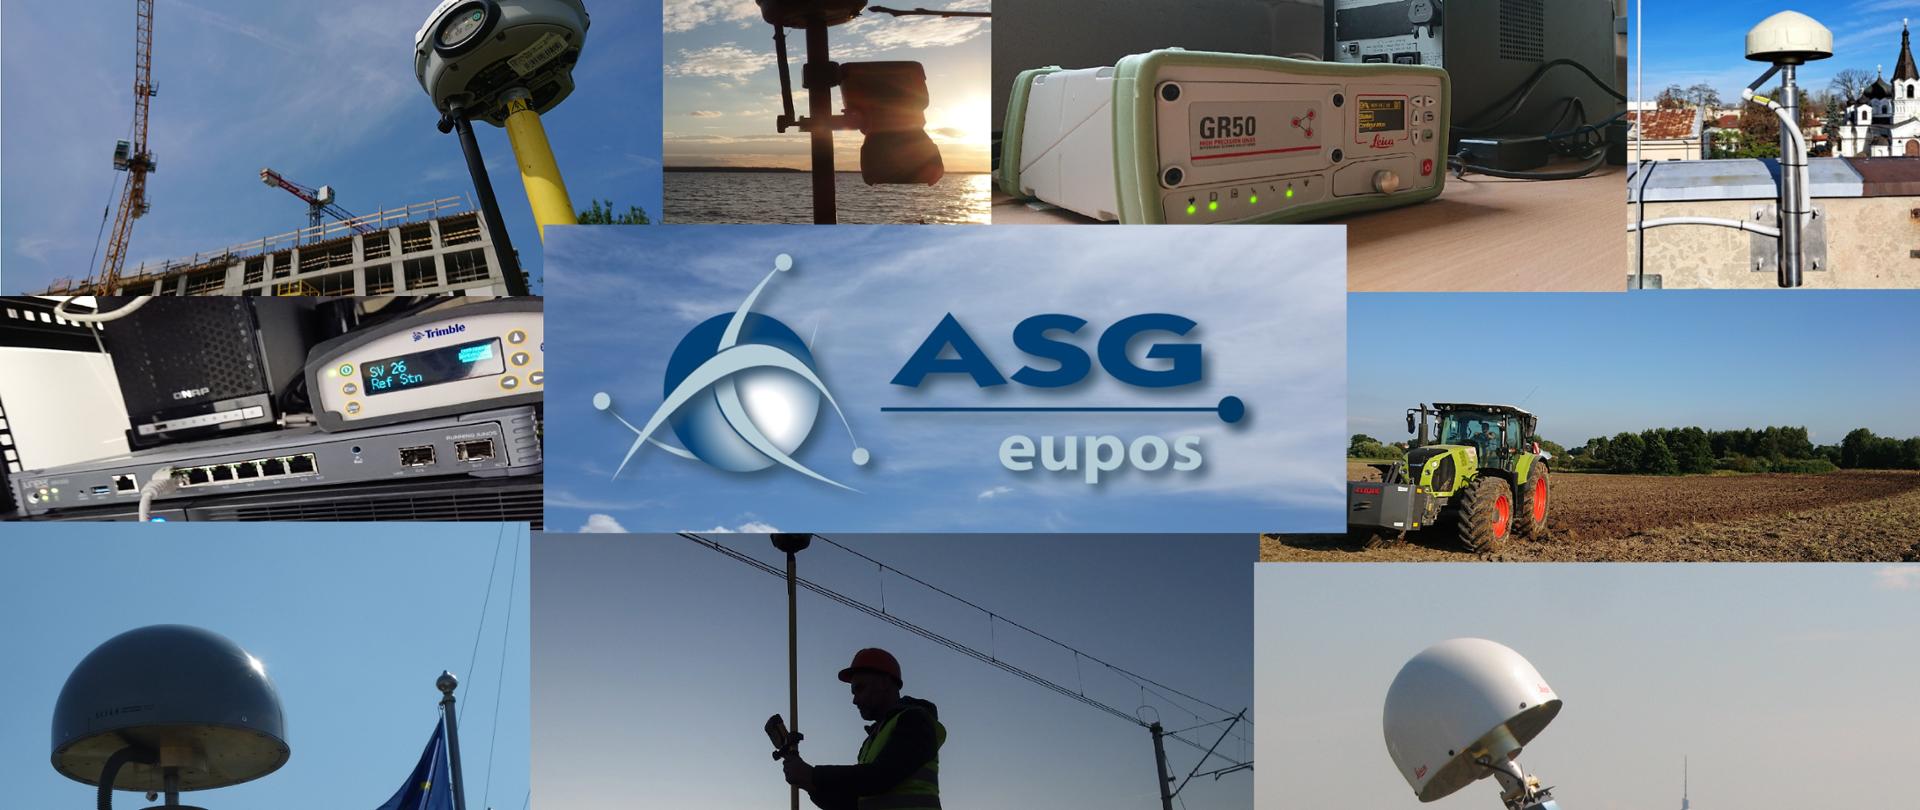 Ilustracja prezentuje różne zastosowania systemu ASG-EUPOS